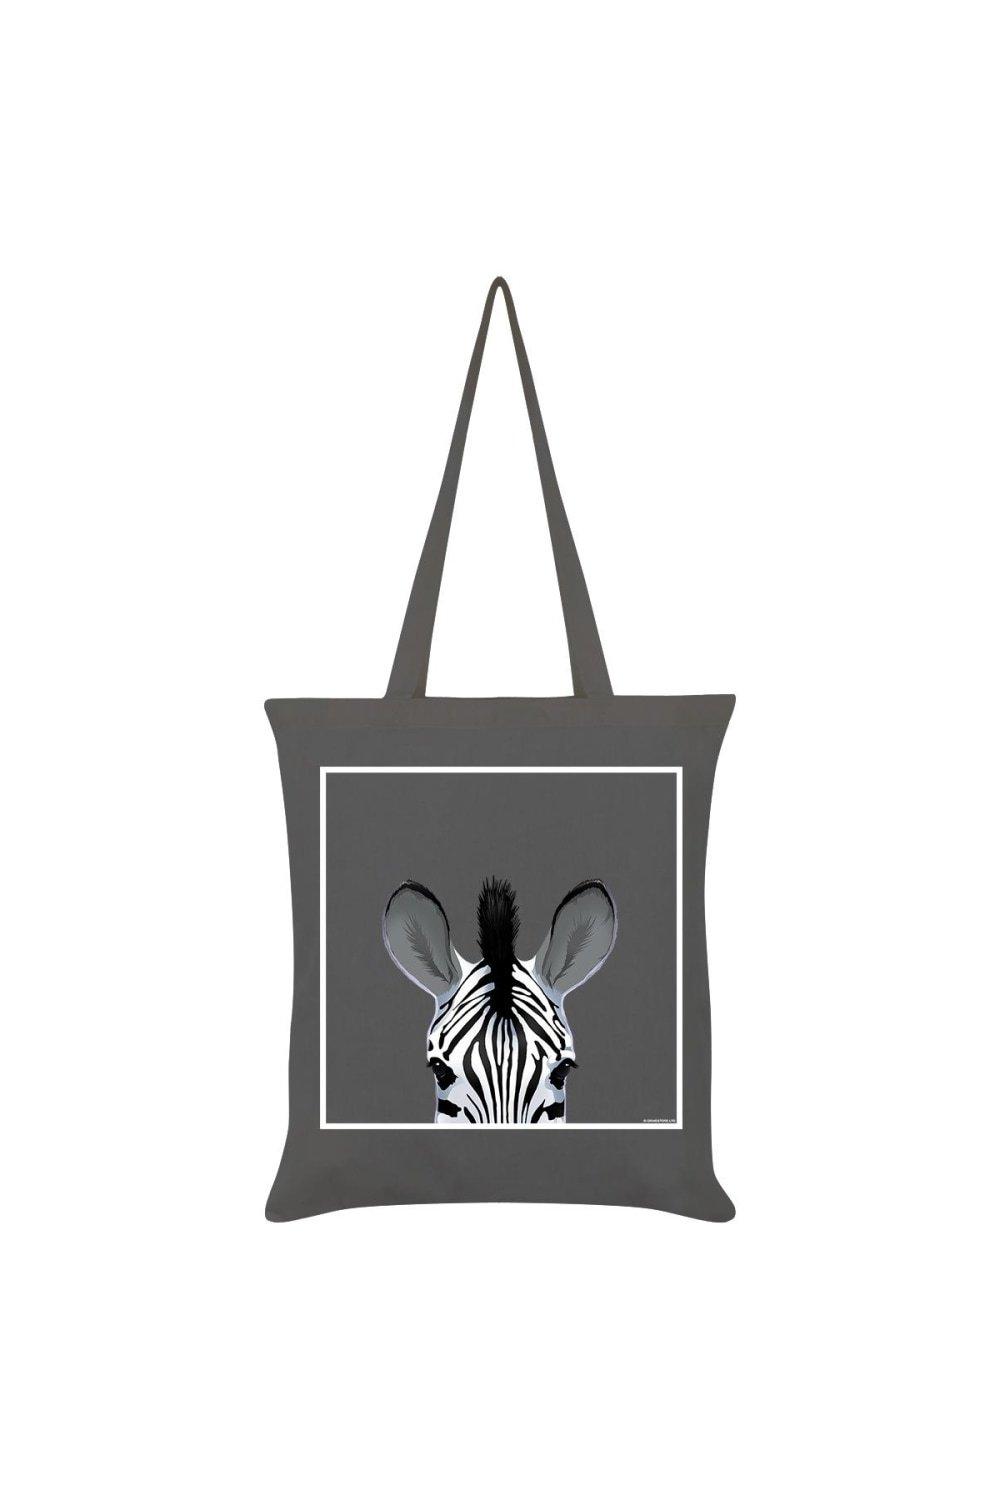 Большая сумка с зеброй Inquisitive Creatures, серый